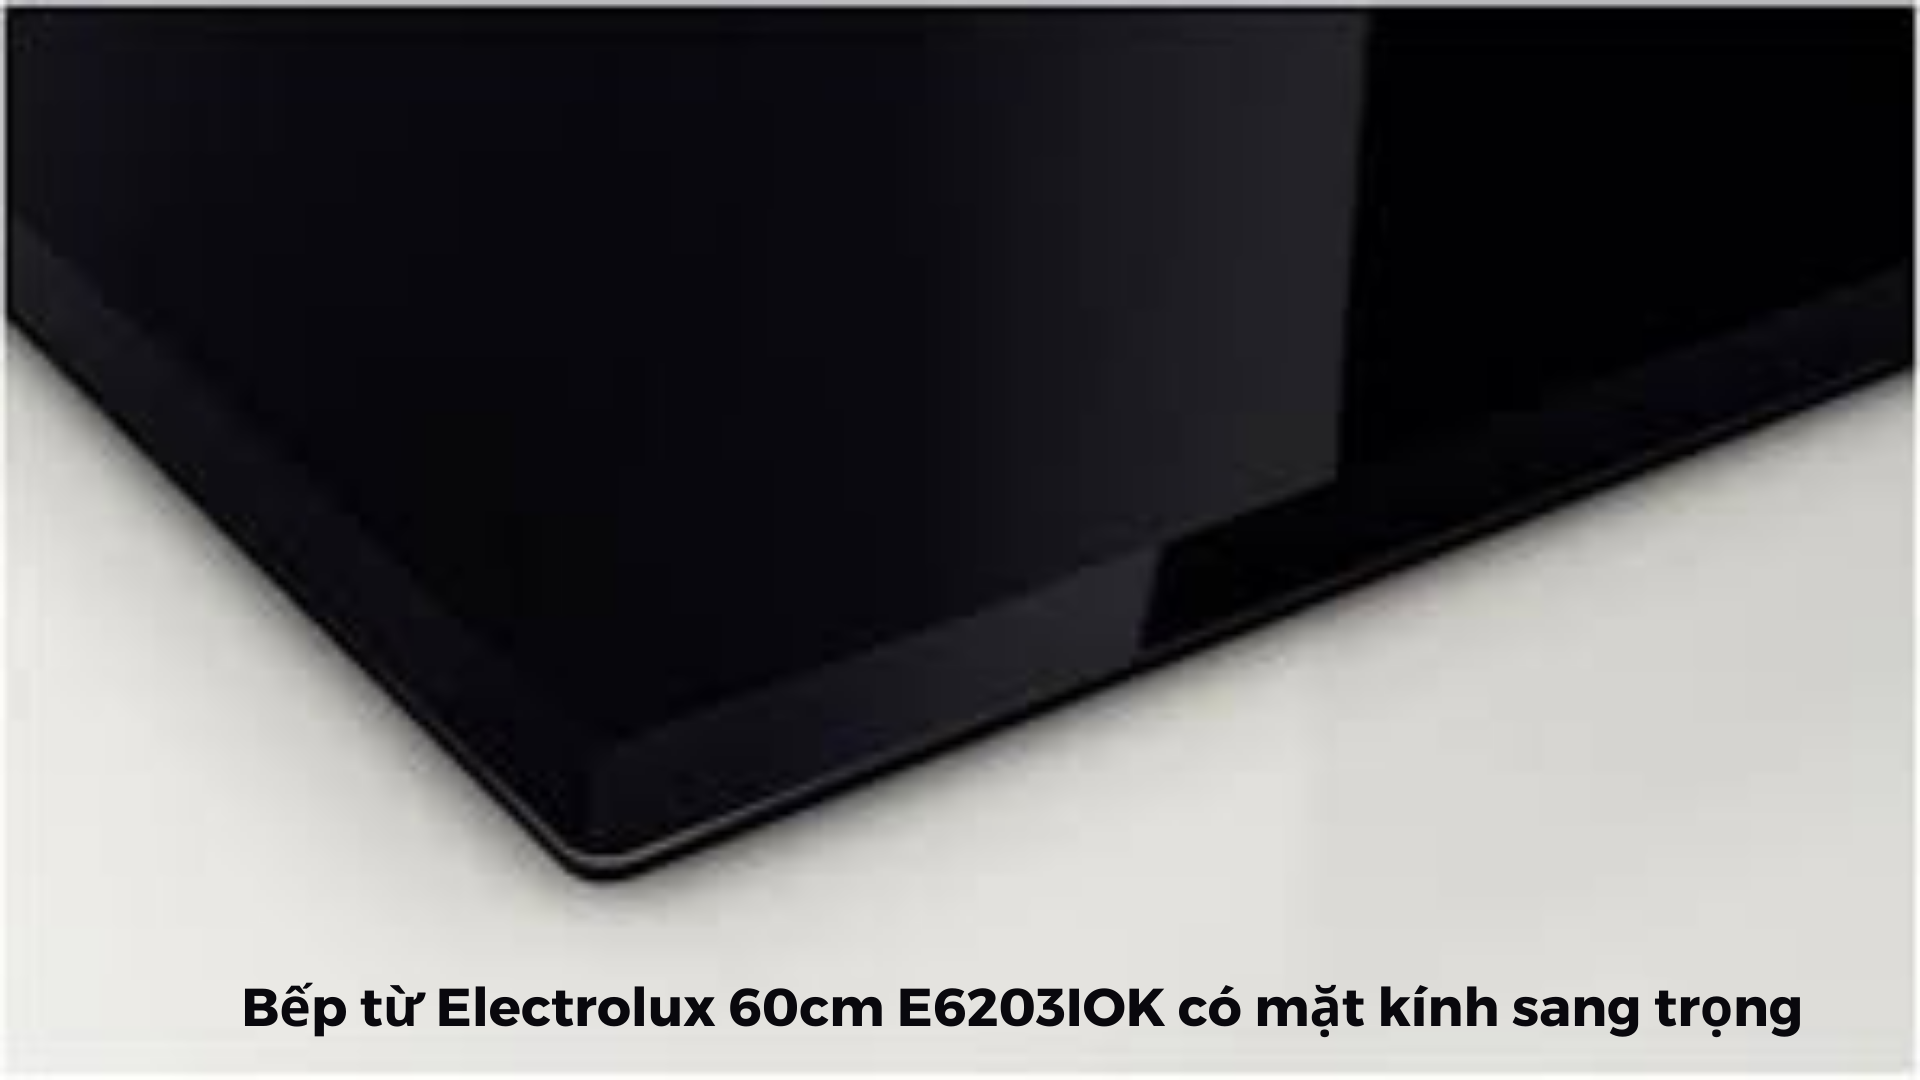  Mặt kính Ceramic đen cao cấp của bếp từ 3 vùng nấu Electrolux 60cm E6203IOK